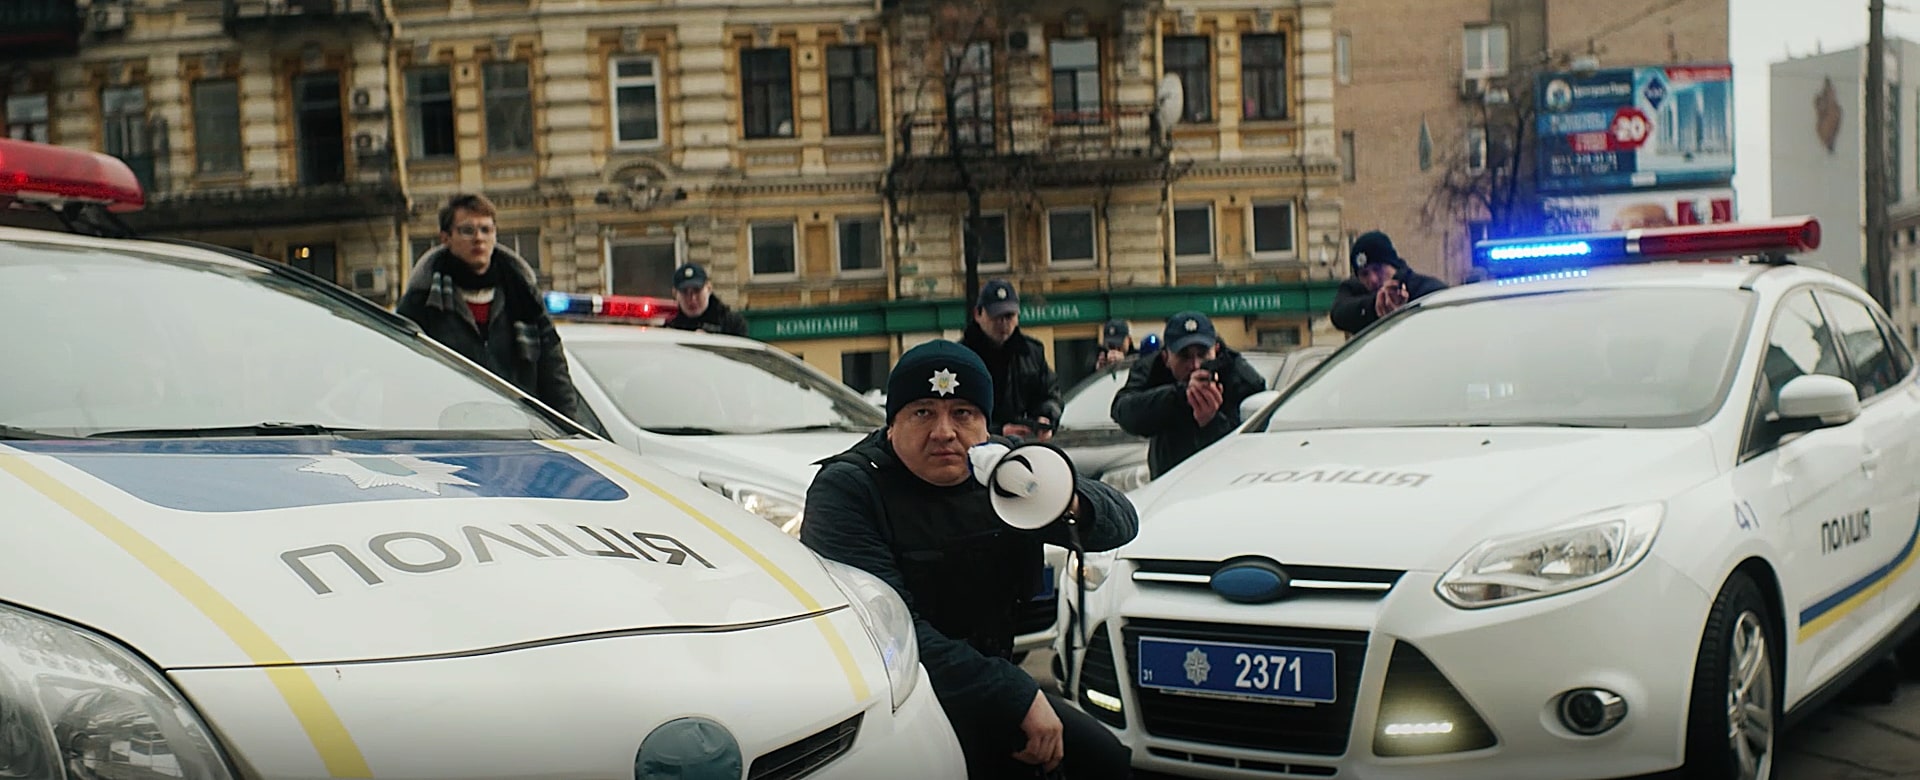 Андрей Бурым, как и в «Янтарных копах», снова сыграет полицейского. Фото: Кадр из фильма «Ограбление по-украински»